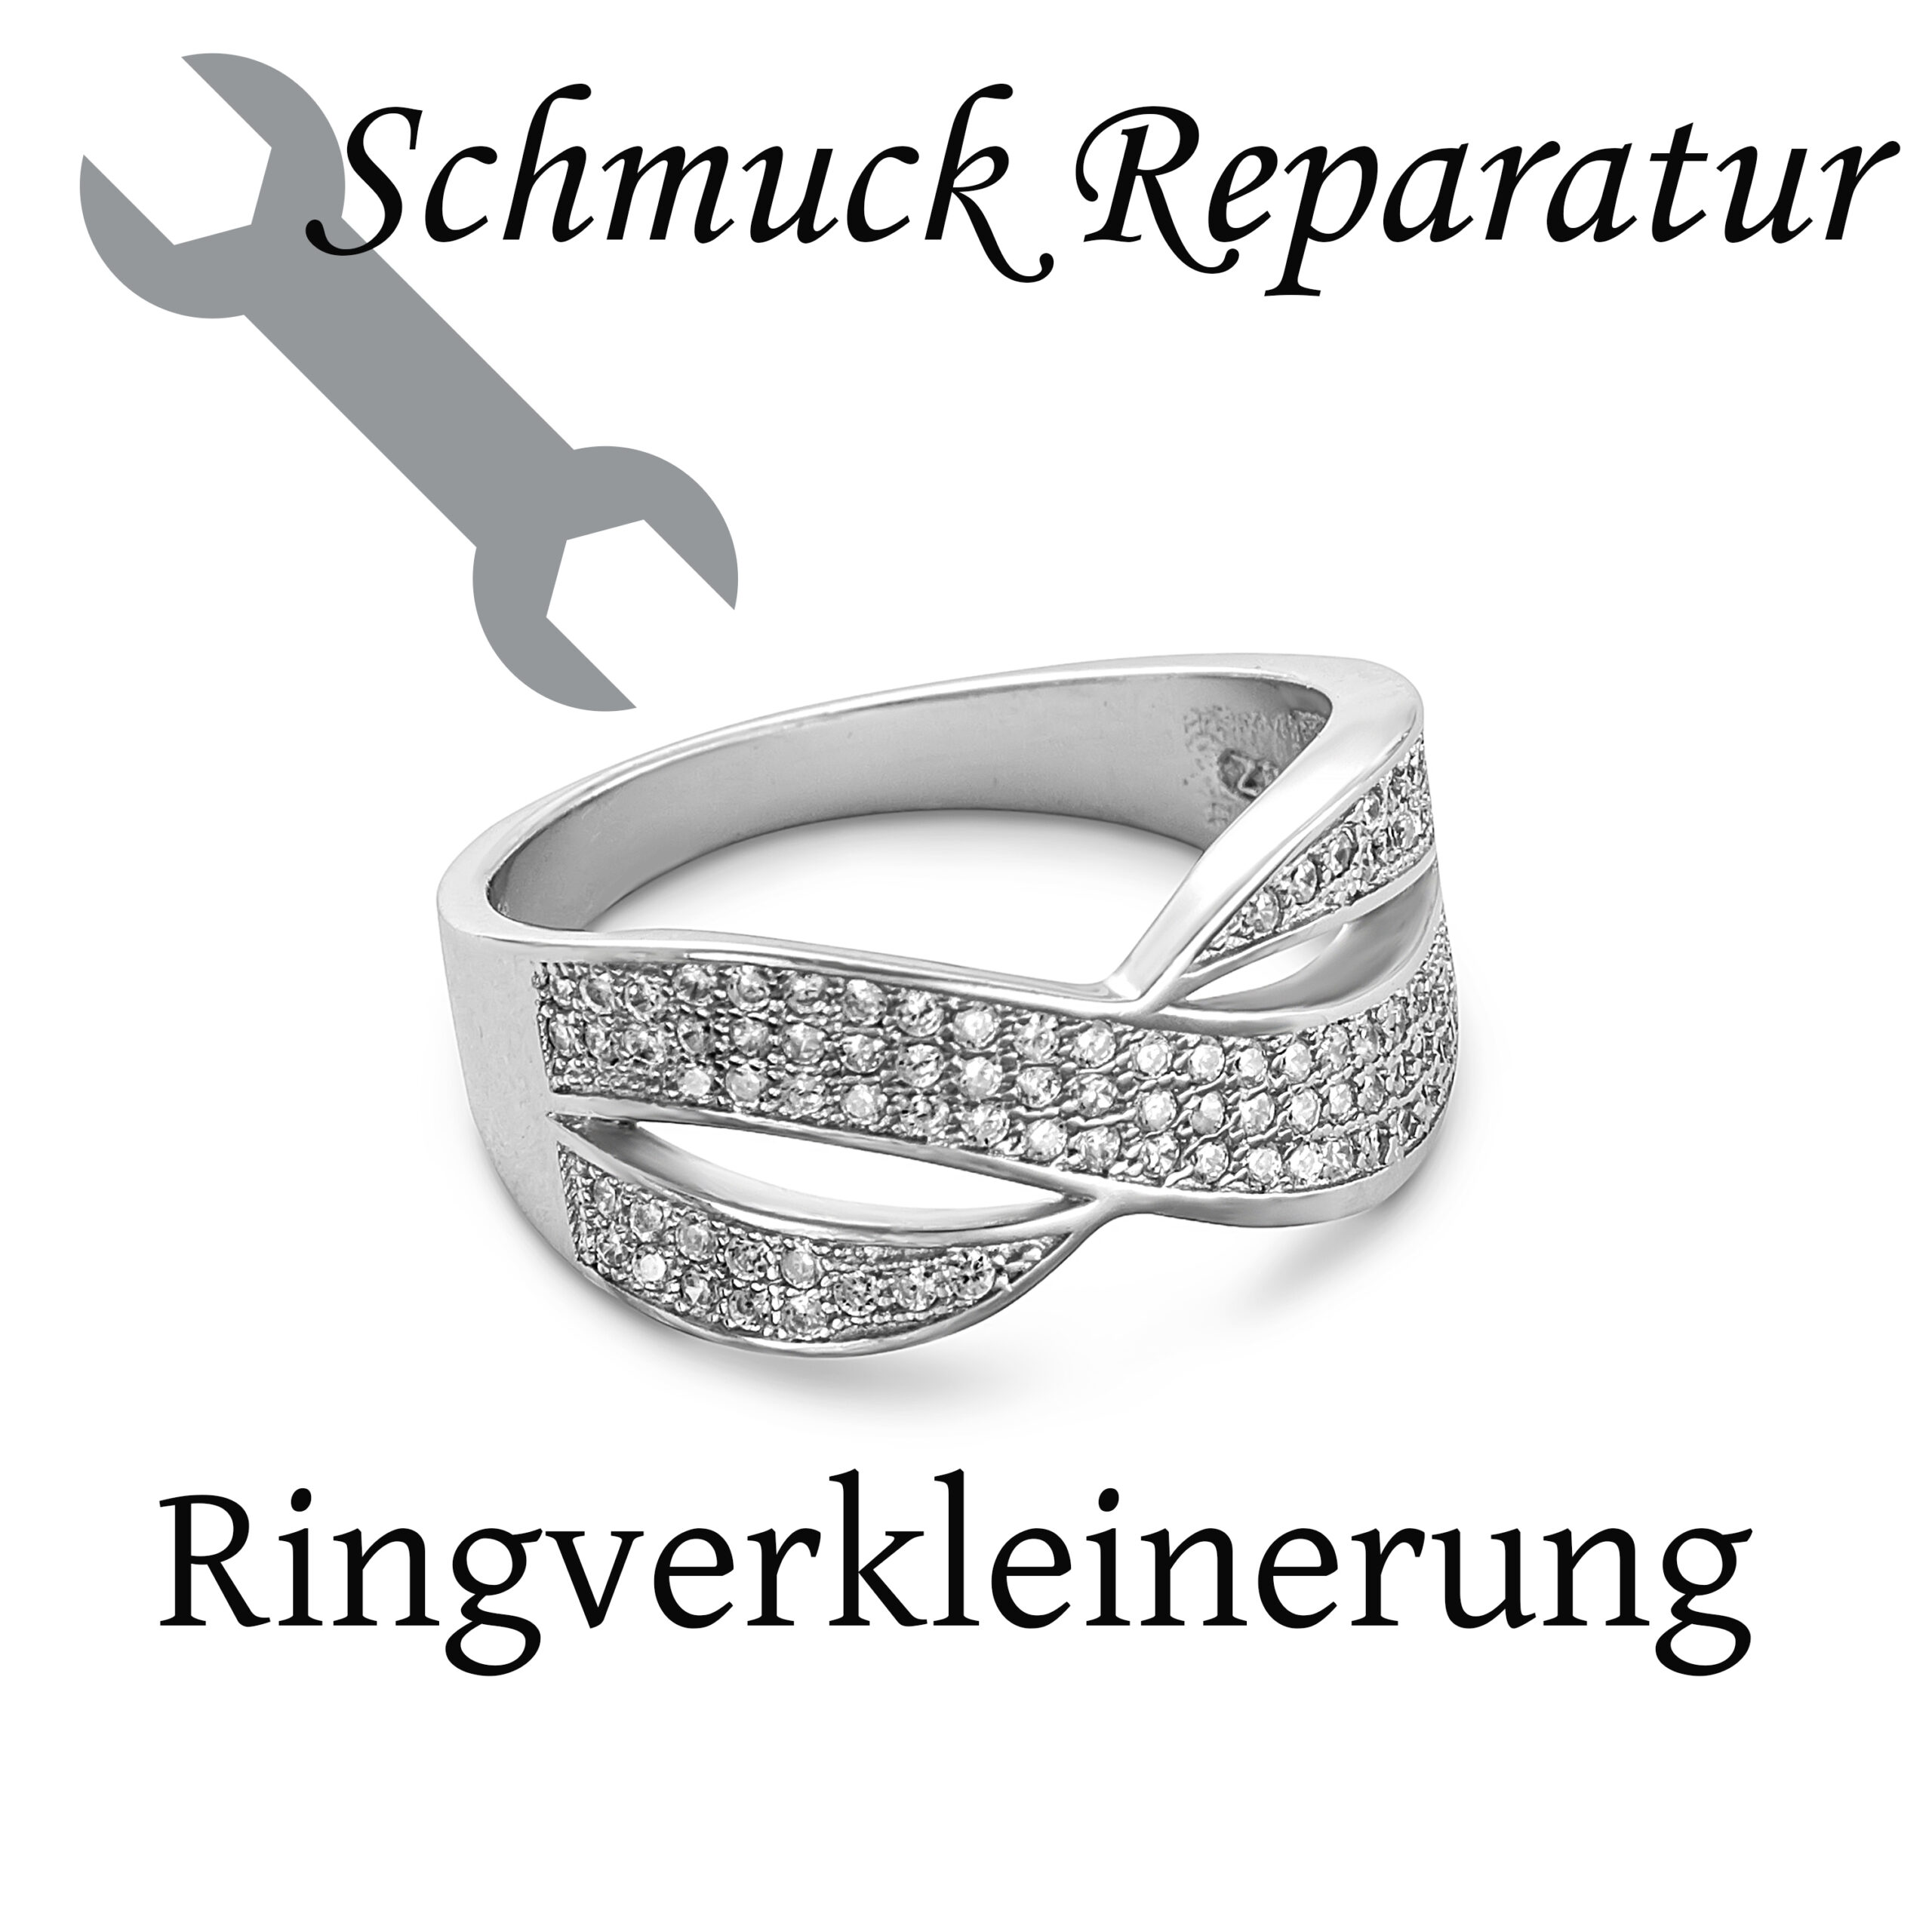 Ring verkleinern lassen -Ringgröße verkleinern bei zu großen Ringen -  Schmuck Reparatur 